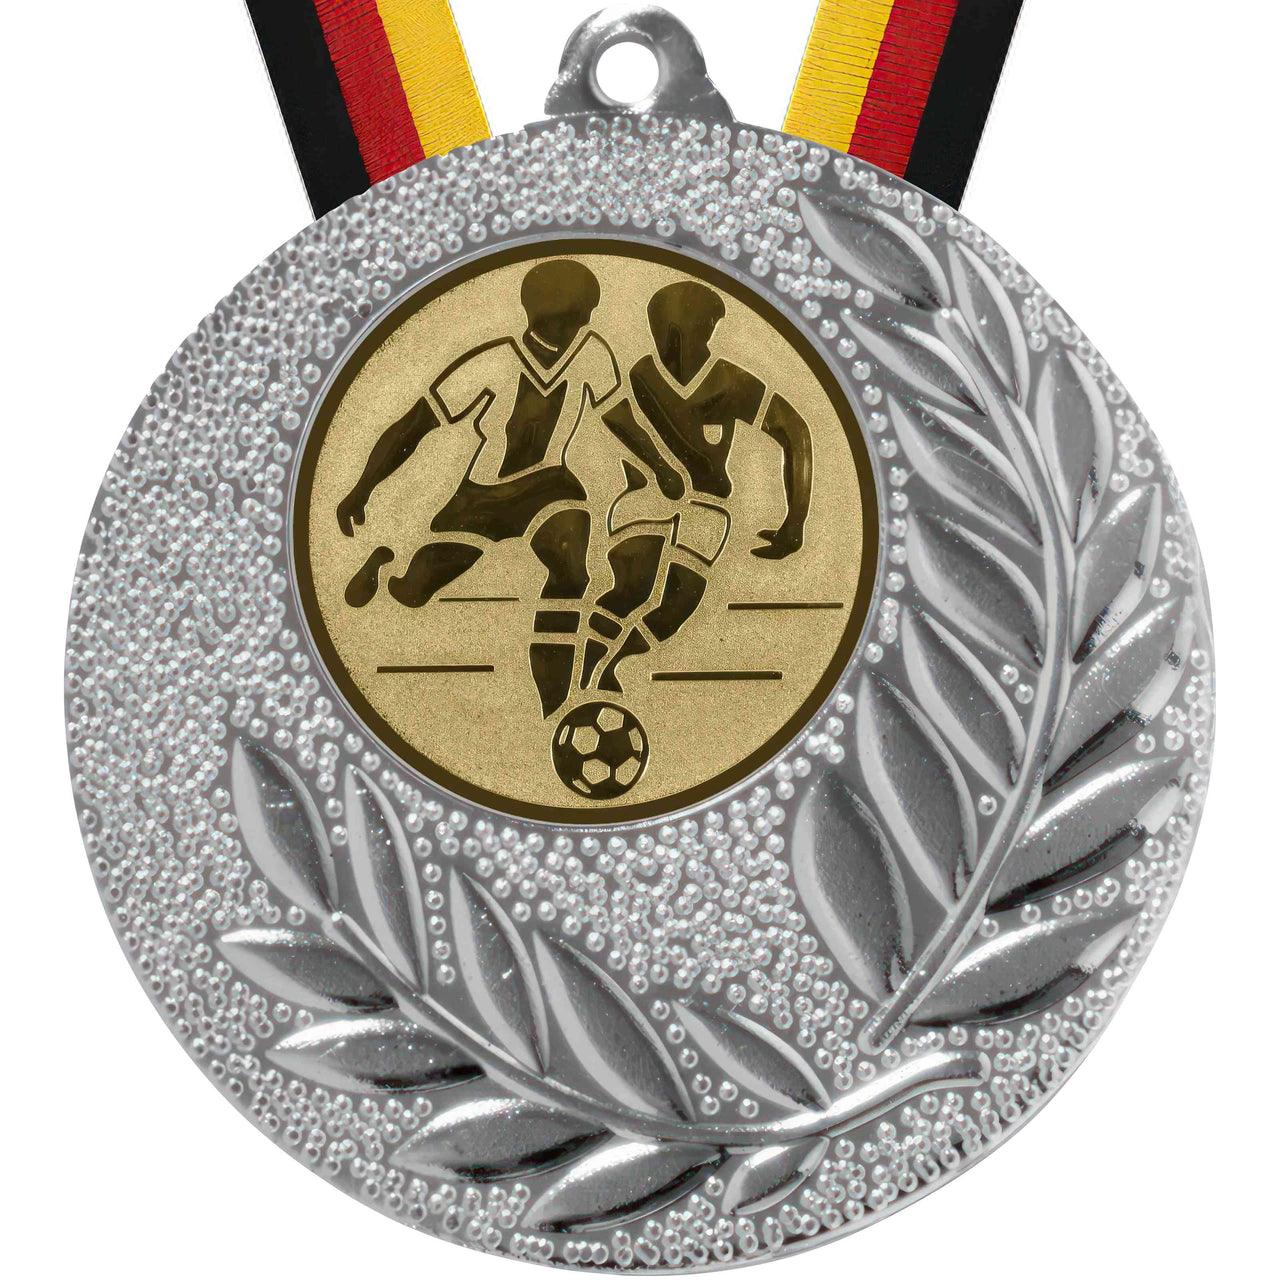 Silber- und Goldmedaillen Berlin 50 mm PK79184g-E25 – Exklusive Ehrung für jeden Anlass 🥇 mit Blattdetails und einem Band, das zwei Spieler und einen Ball darstellt.